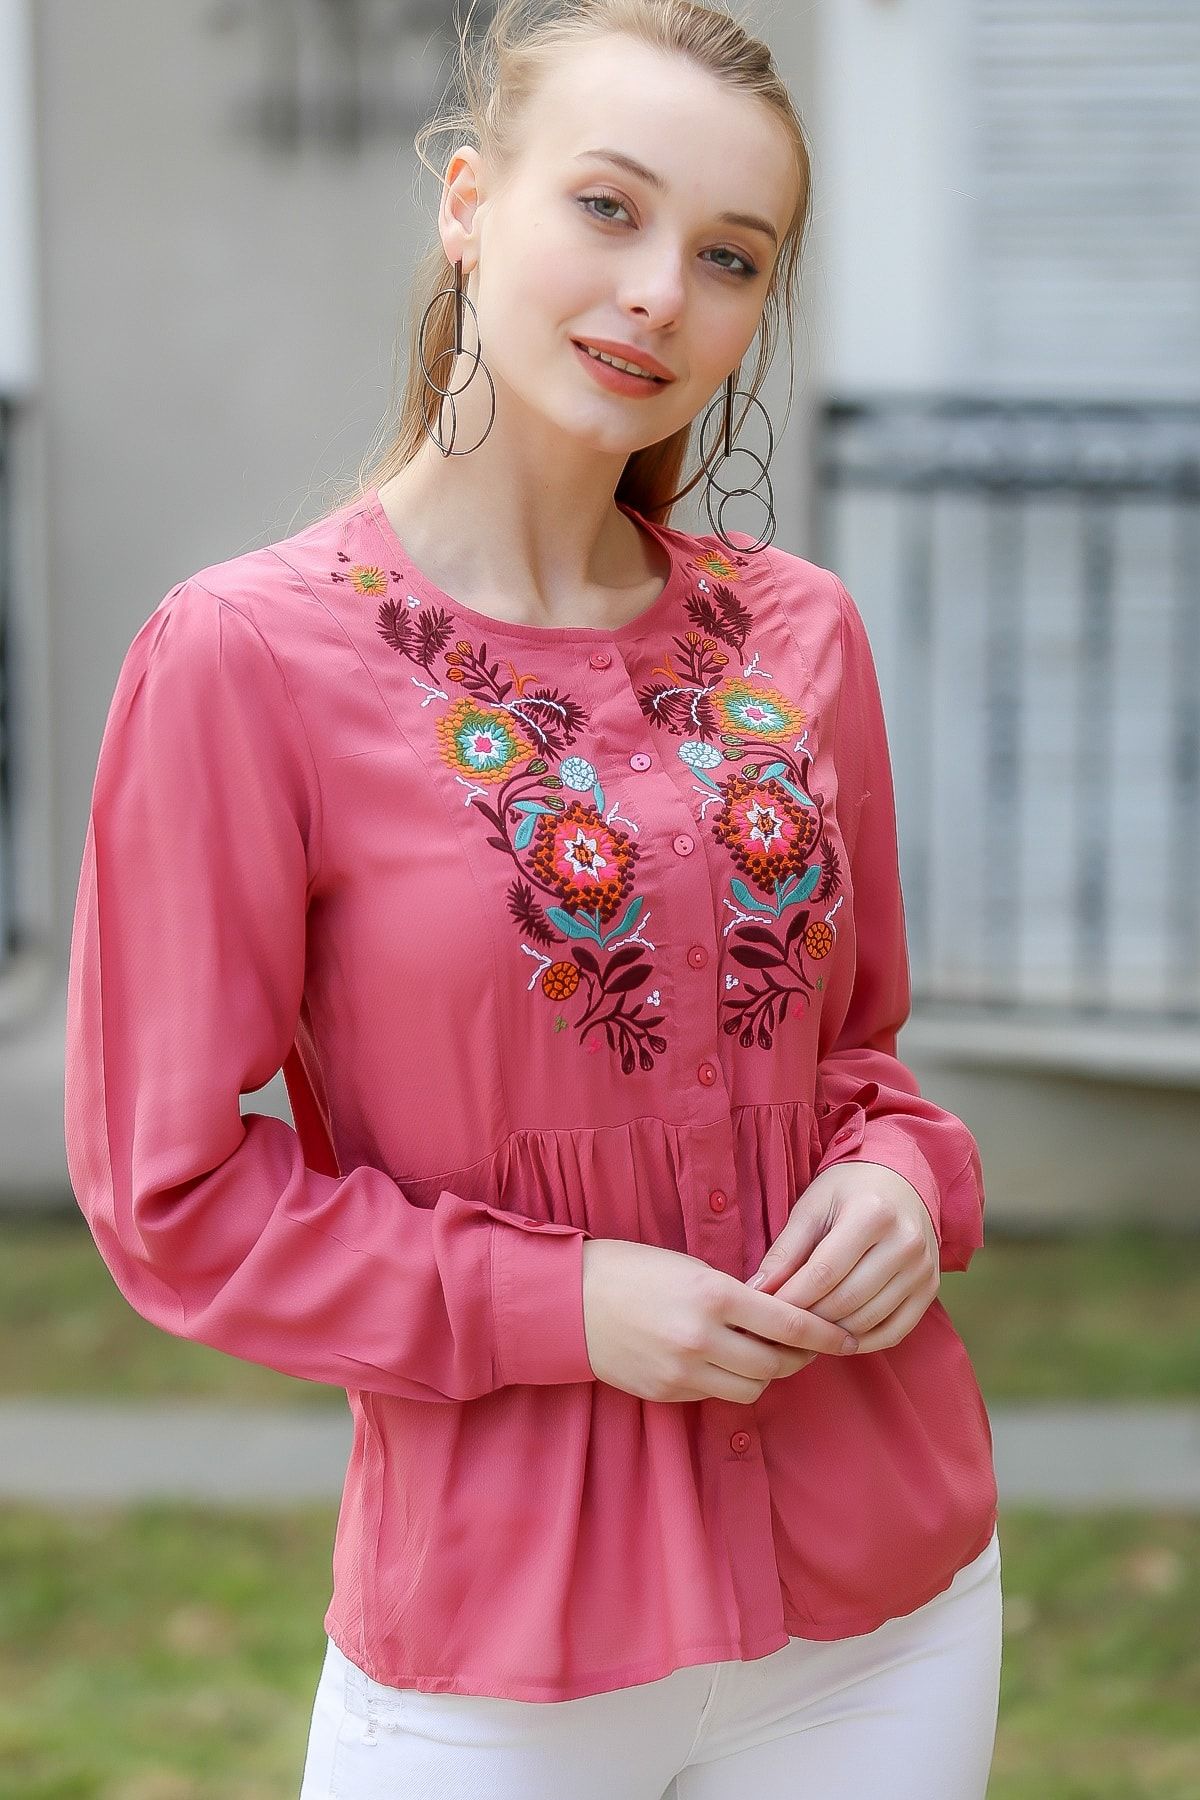 Chiccy Kadın Pembe Bohem Çiçek Nakışlı Düğme Detaylı Bluz M10010200Bl96287